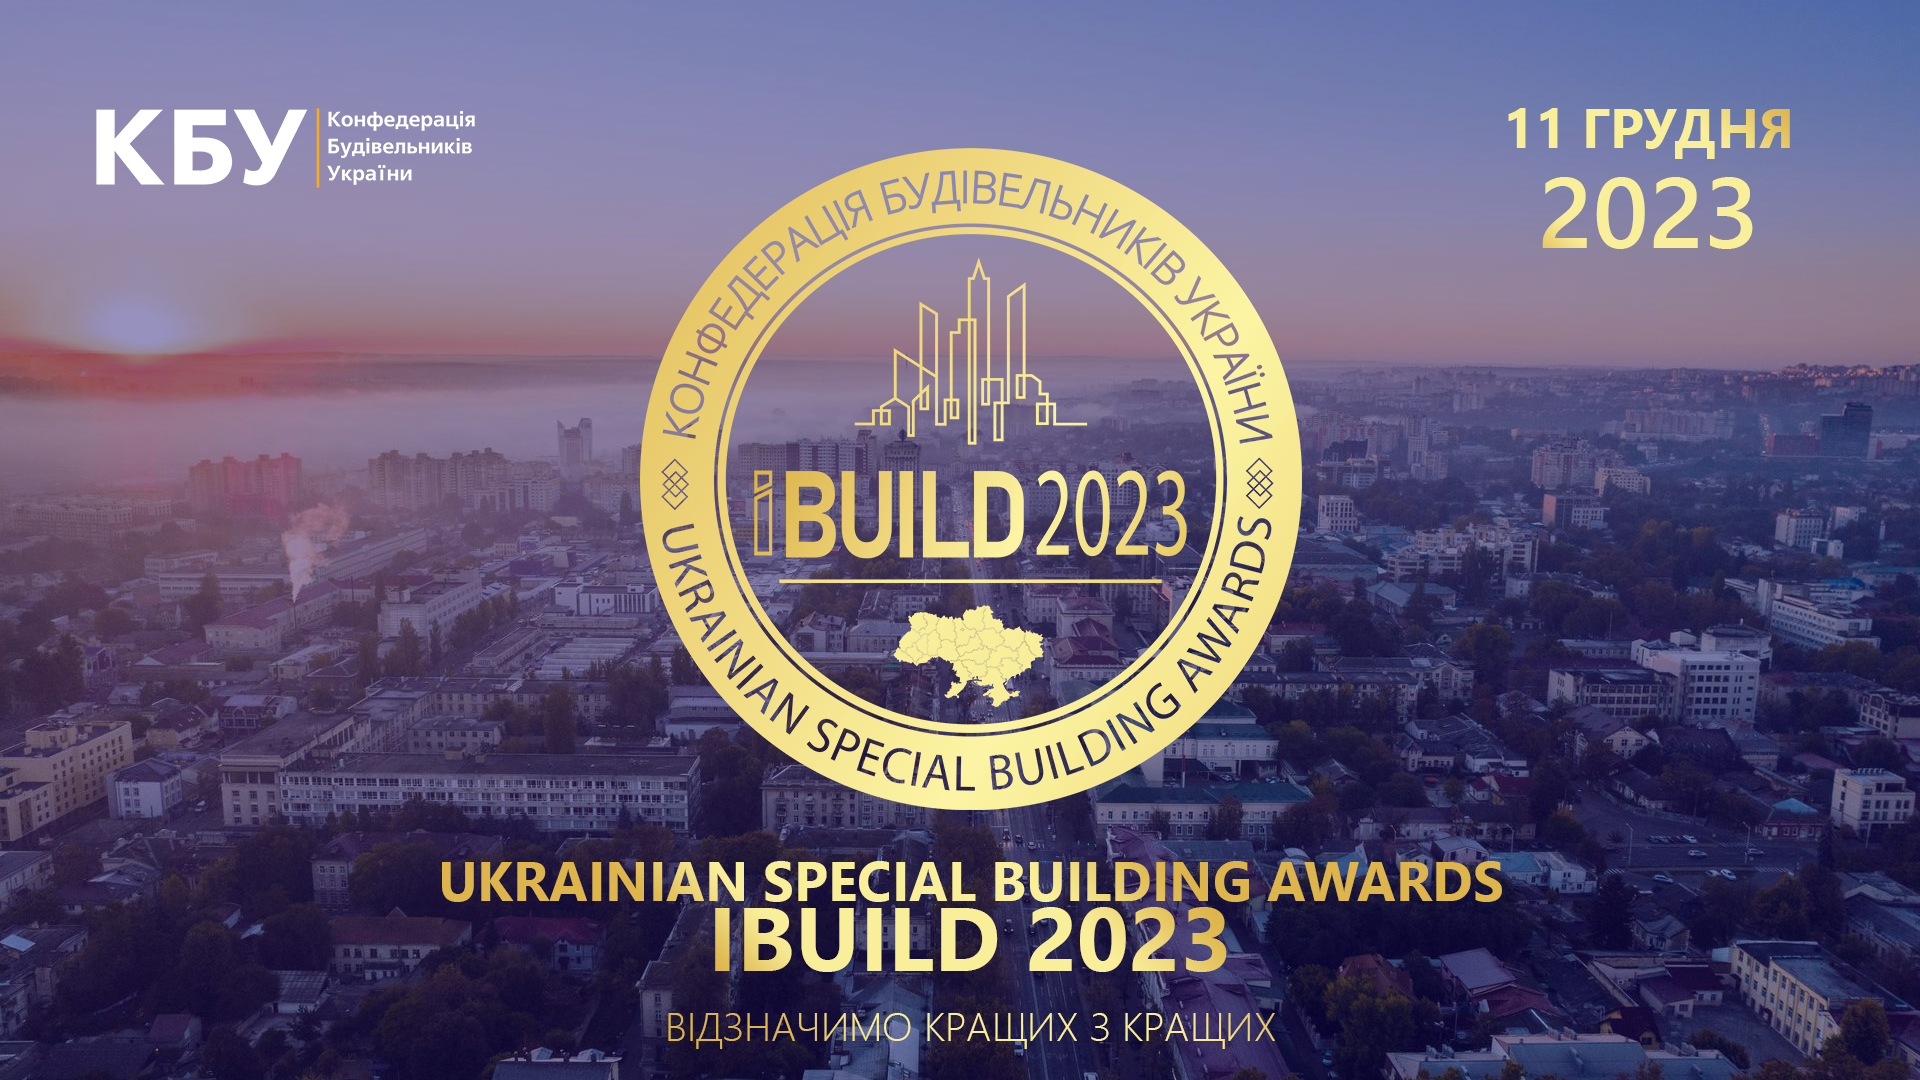 11 грудня 2023 року відбудеться UKRAINIAN SPECIAL BUILDING AWARDS IBUILD 2023!